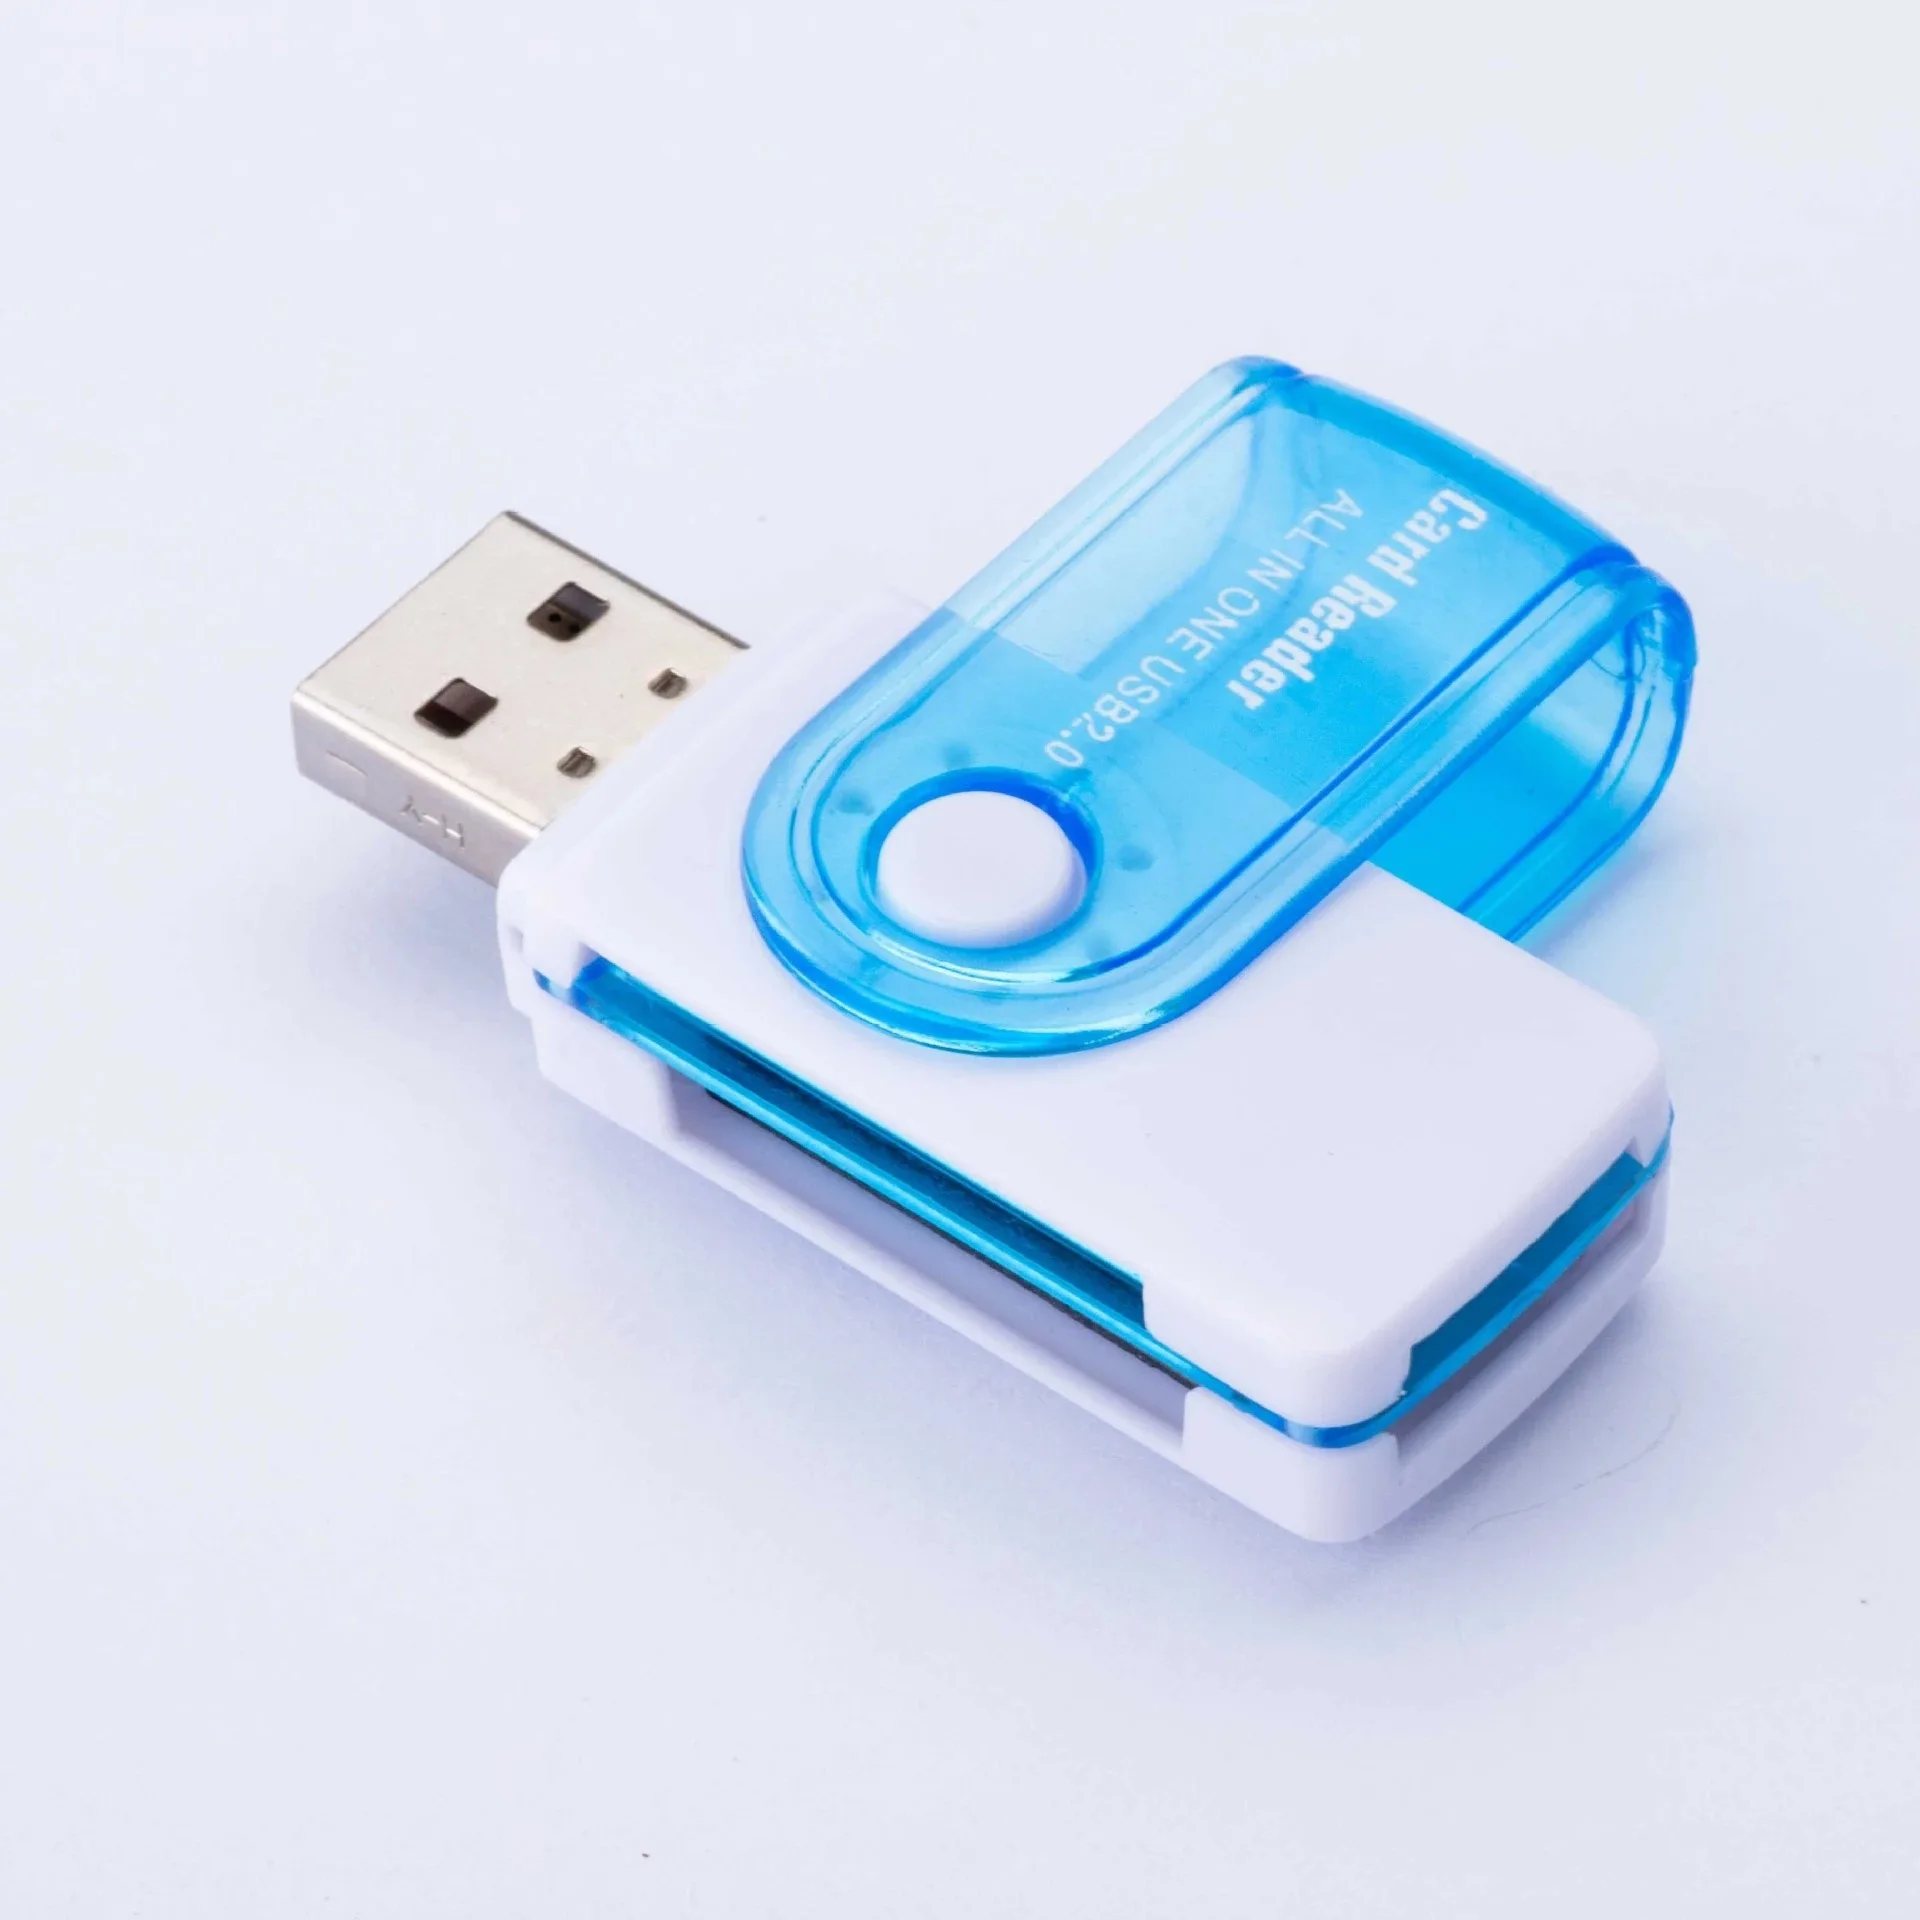 Модные 4-в-1 Алюминий устройство чтения карт памяти смарт для карты памяти MicroSD карта, циклическая запись, SD, TF, MS Duo, MS микро(M2) MS PRO картридеры USB2.0 - Цвет: Blue